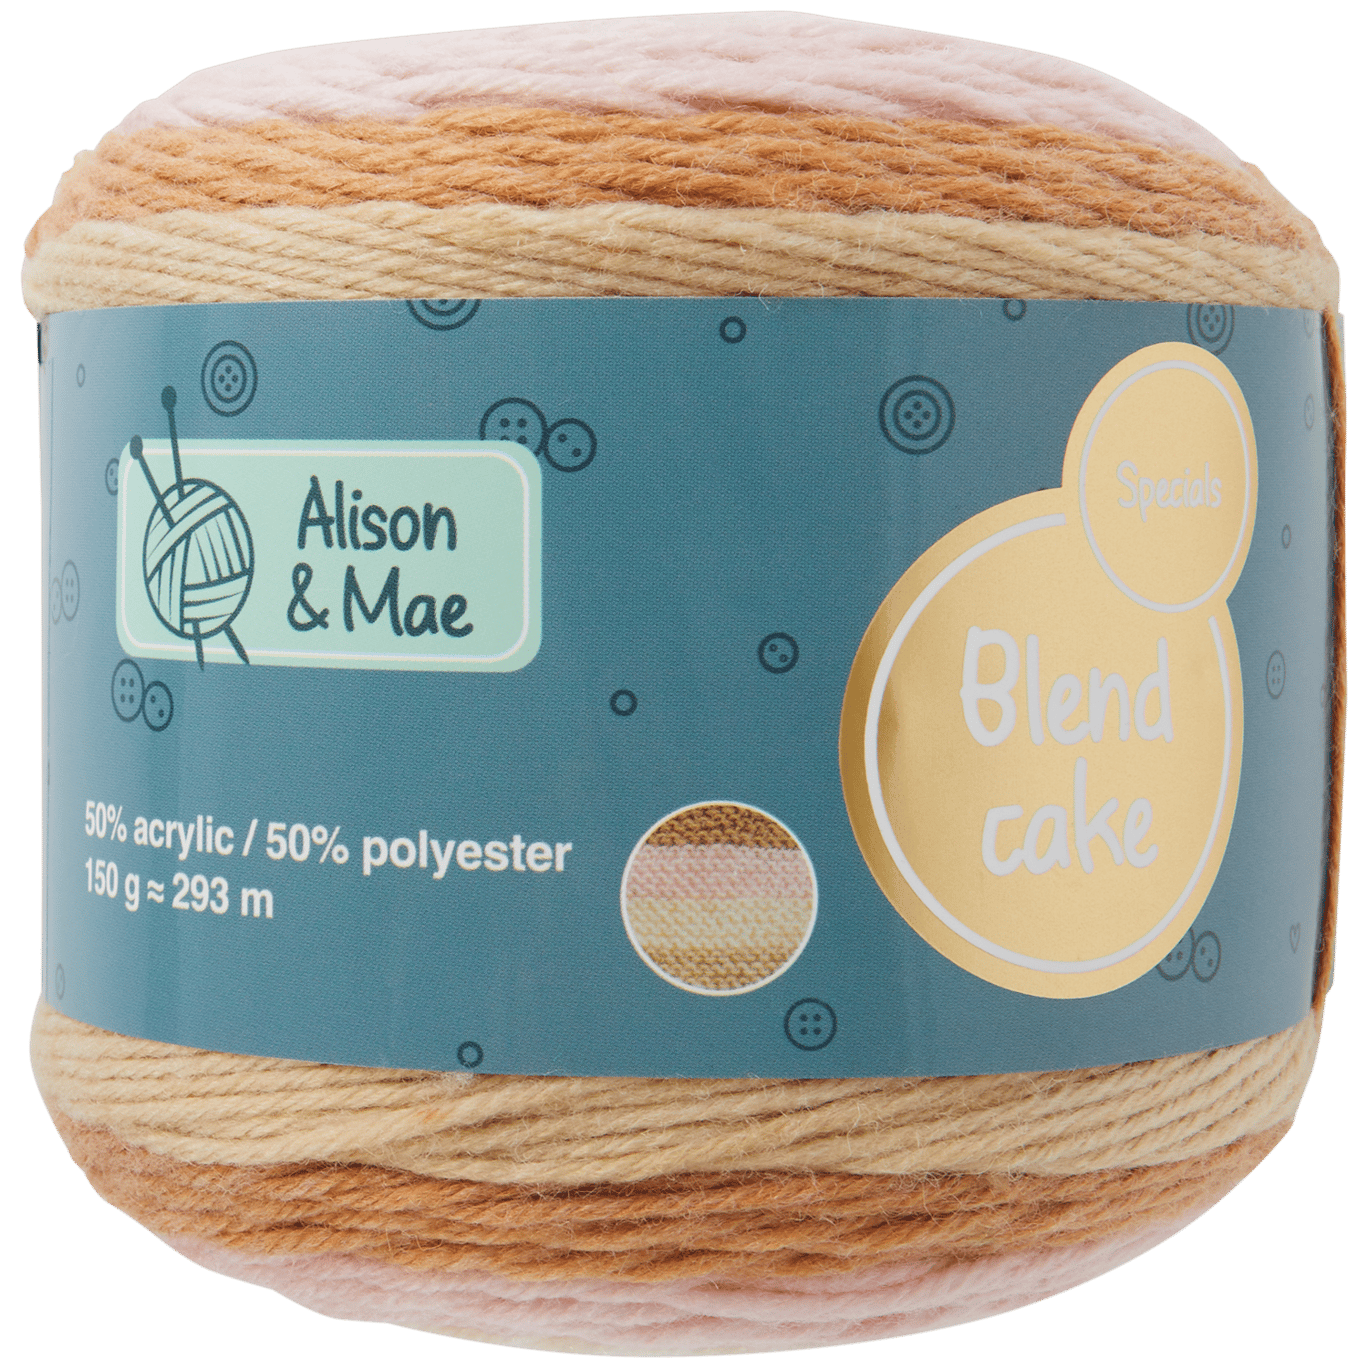 Faial alcohol stad Alison & Mae breigaren Blend Cake | Action.com